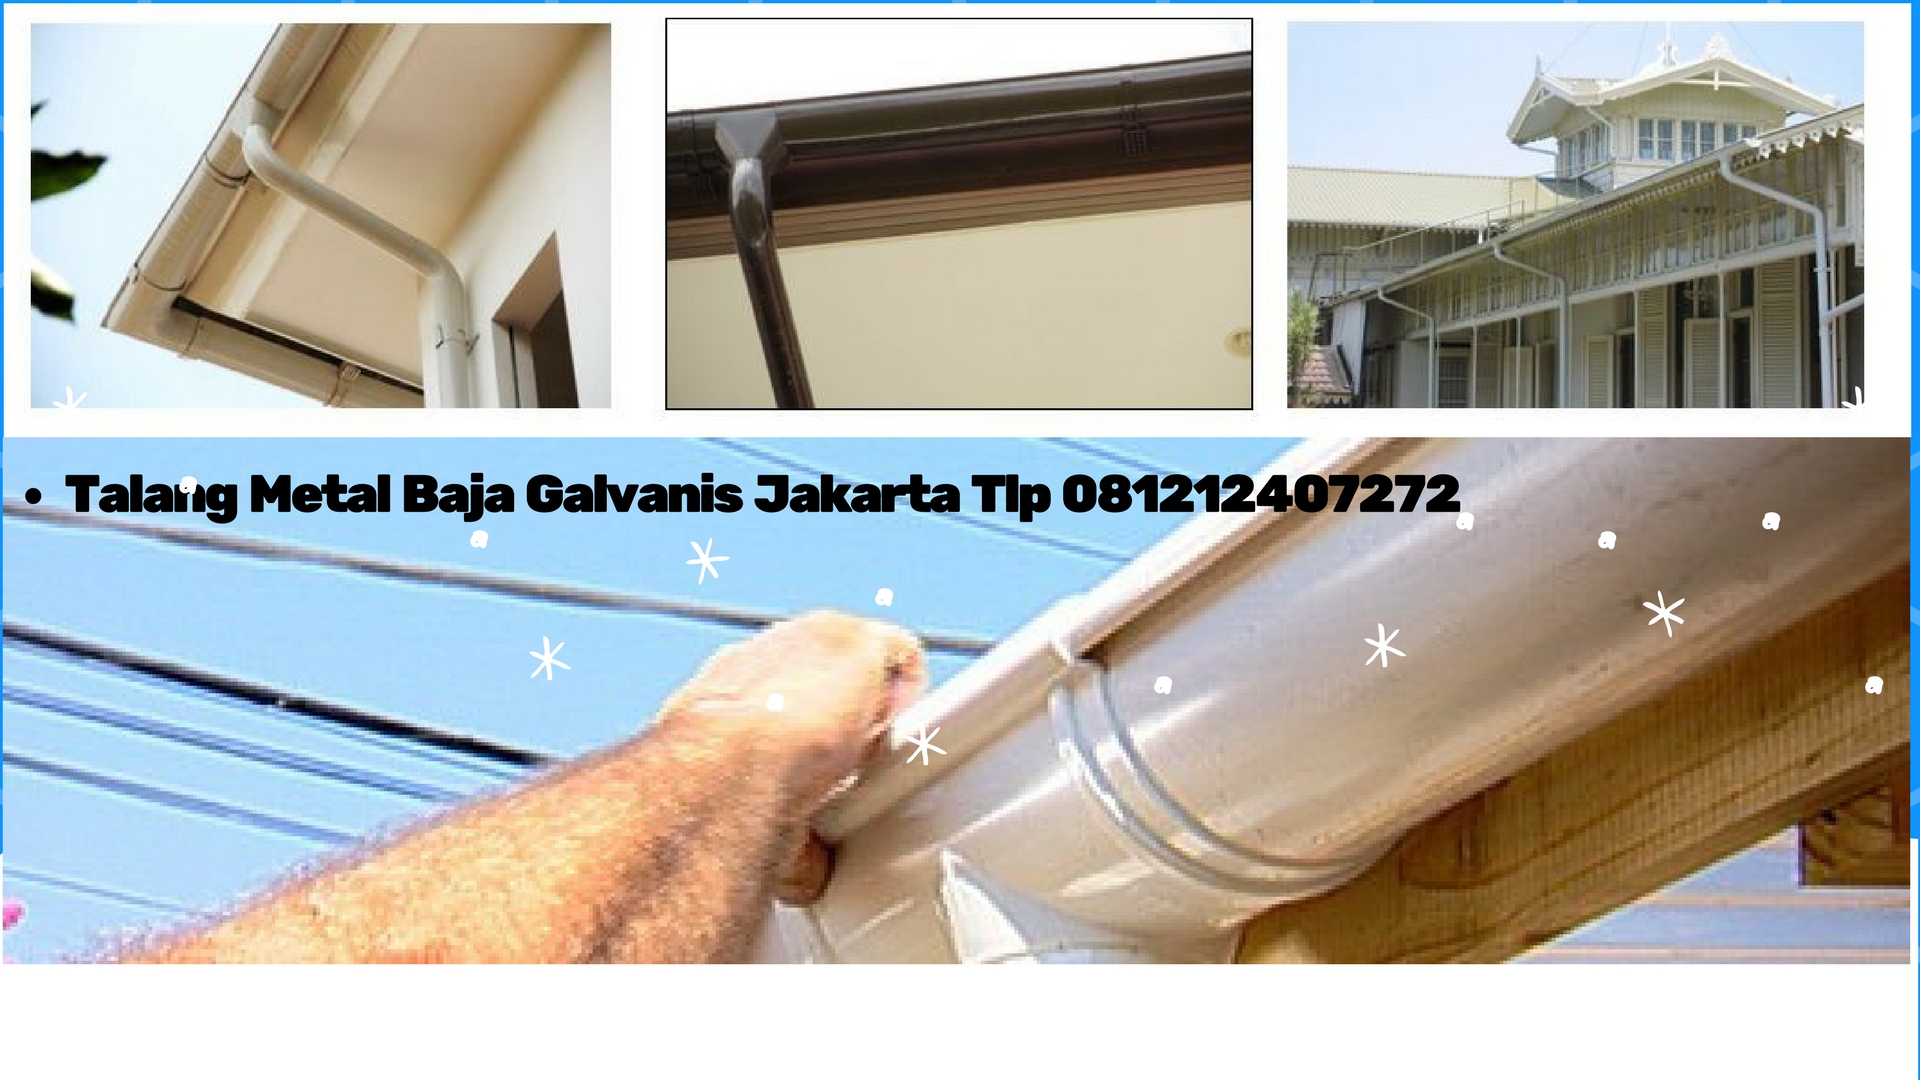 Harga Jual Talang Air Metal  Baja Galvanis Tlp 081212407272 